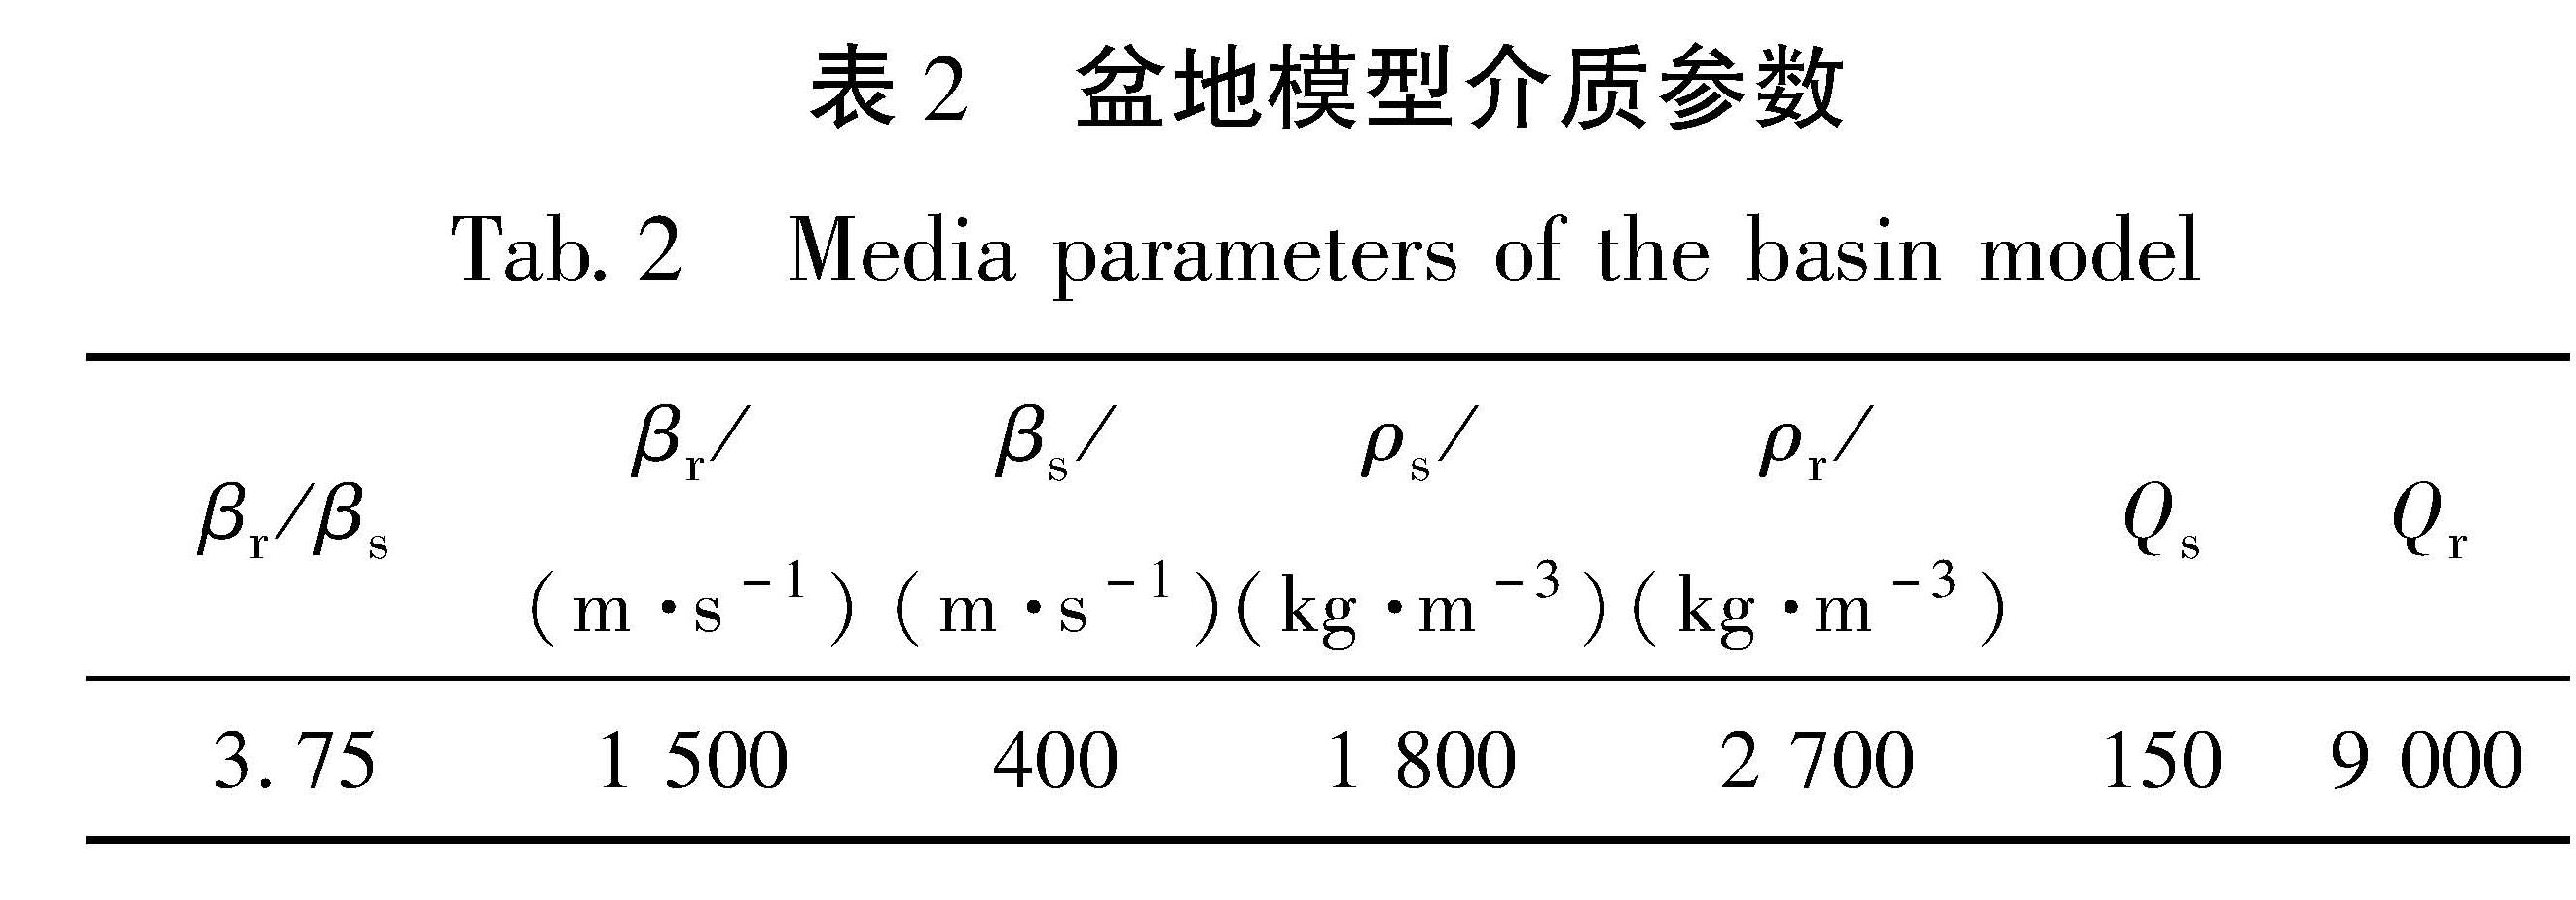 表2 盆地模型介质参数<br/>Tab.2 Media parameters of the basin model